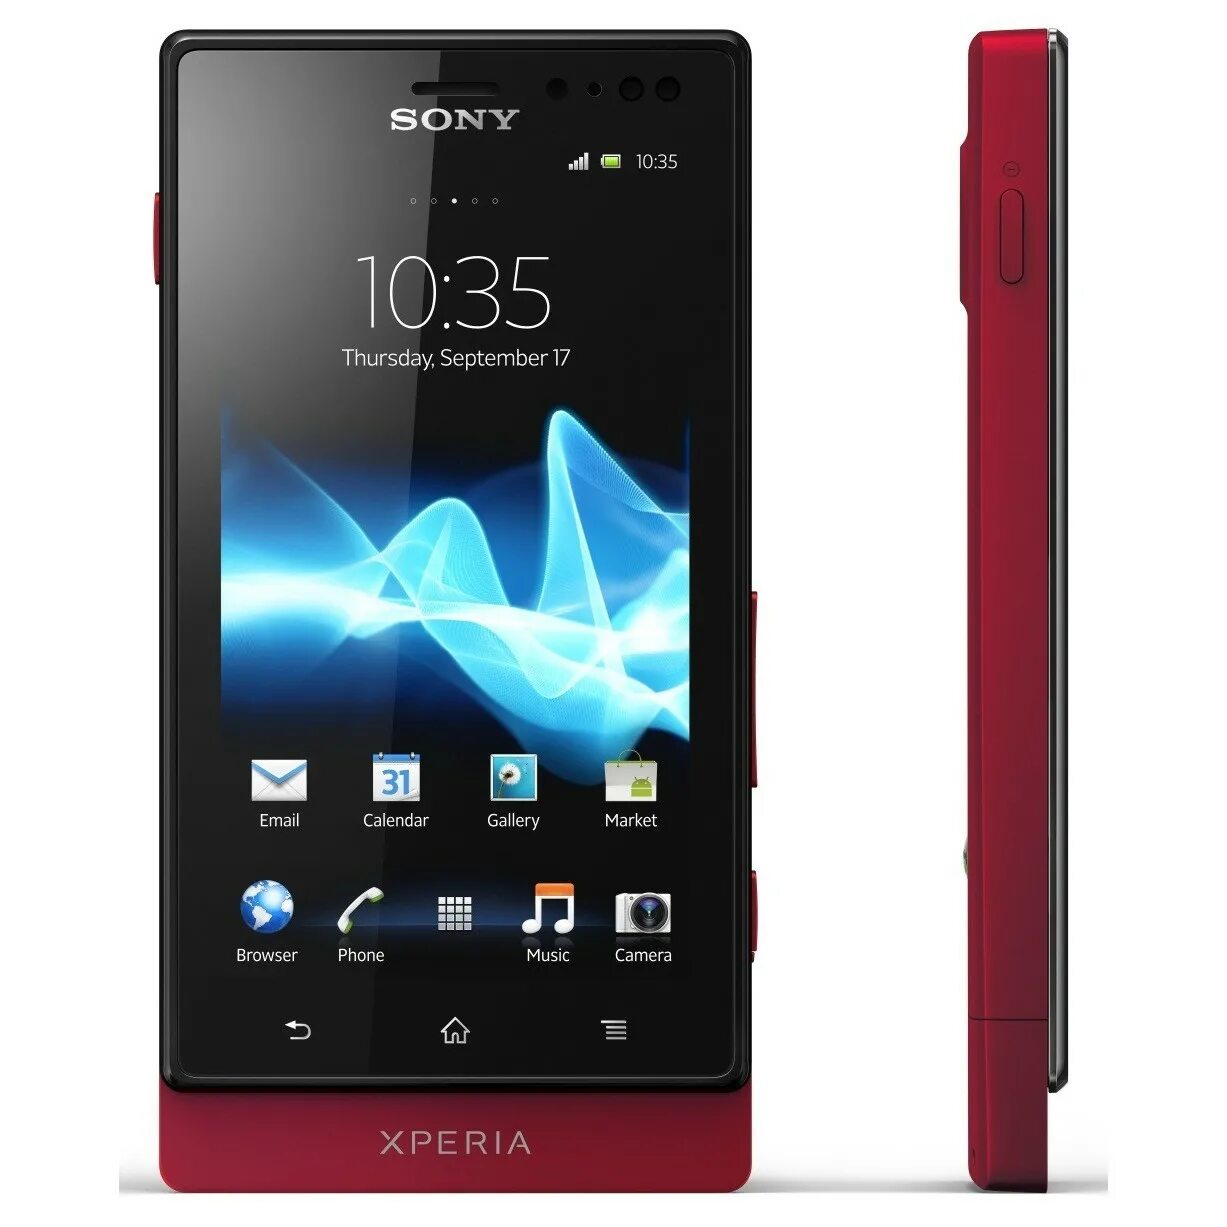 Sony Xperia mt27i. Sony Xperia sola. Sony Xperia sola mt27i. Sony Ericsson Xperia sola mt27i.